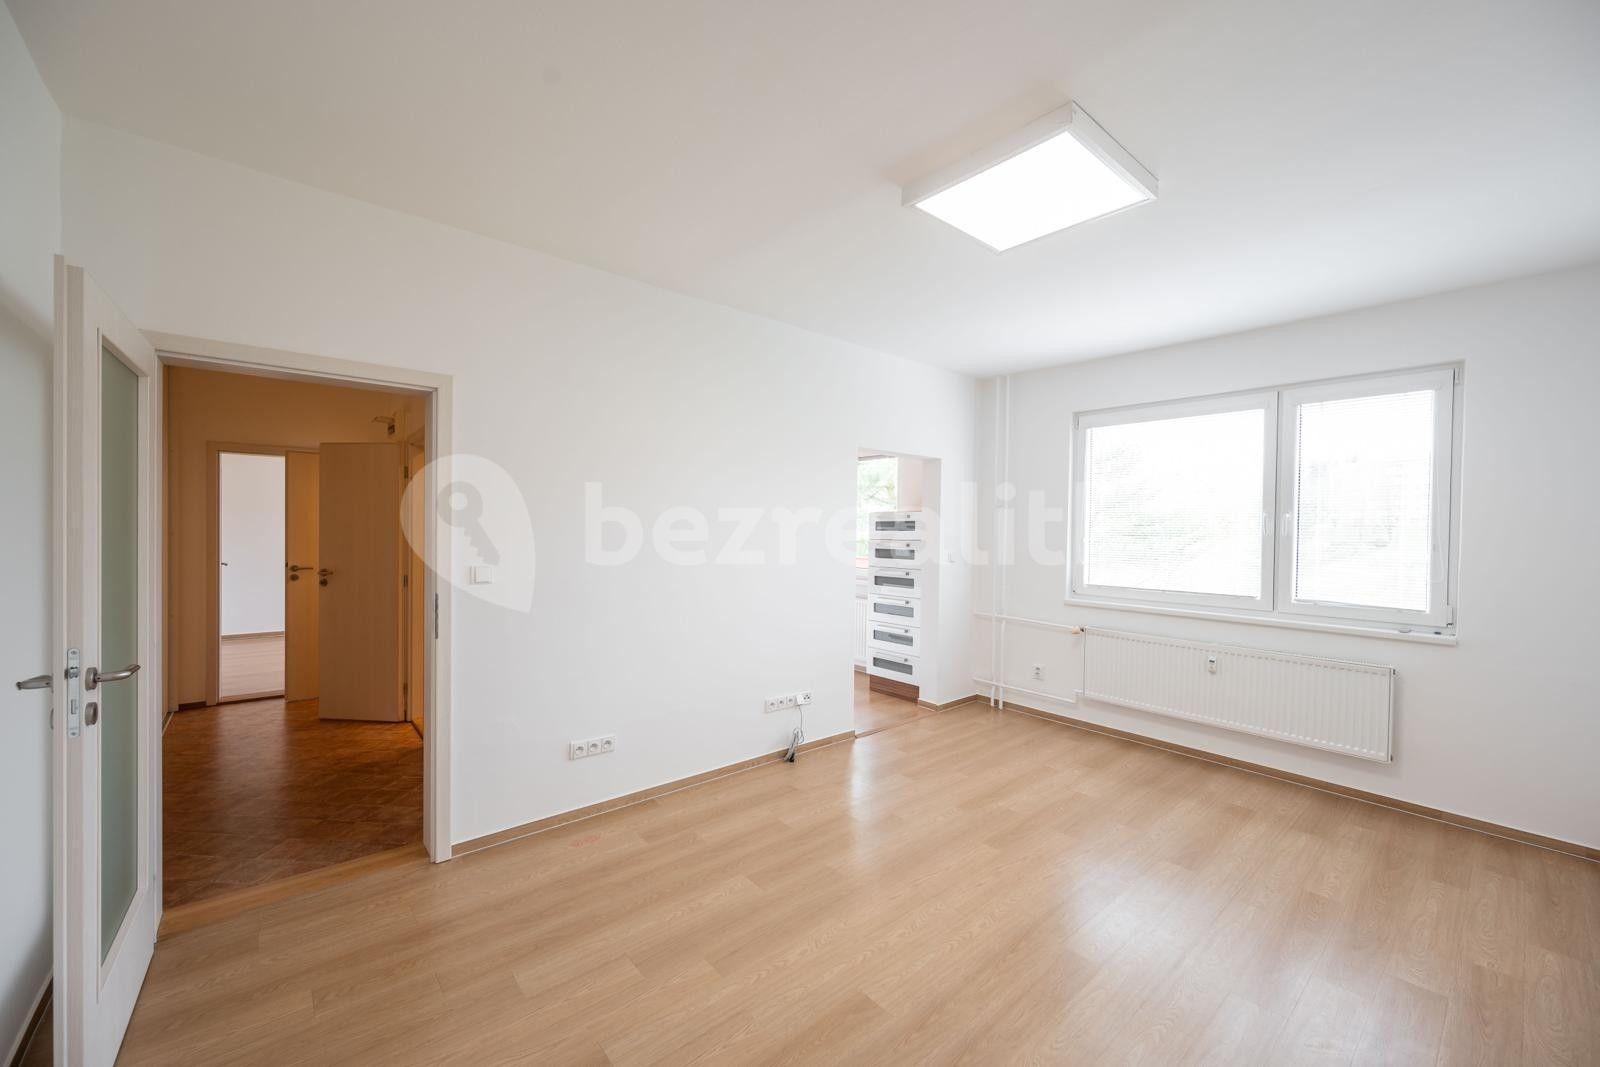 3 bedroom flat for sale, 76 m², Družstevní, Uherský Brod, Zlínský Region